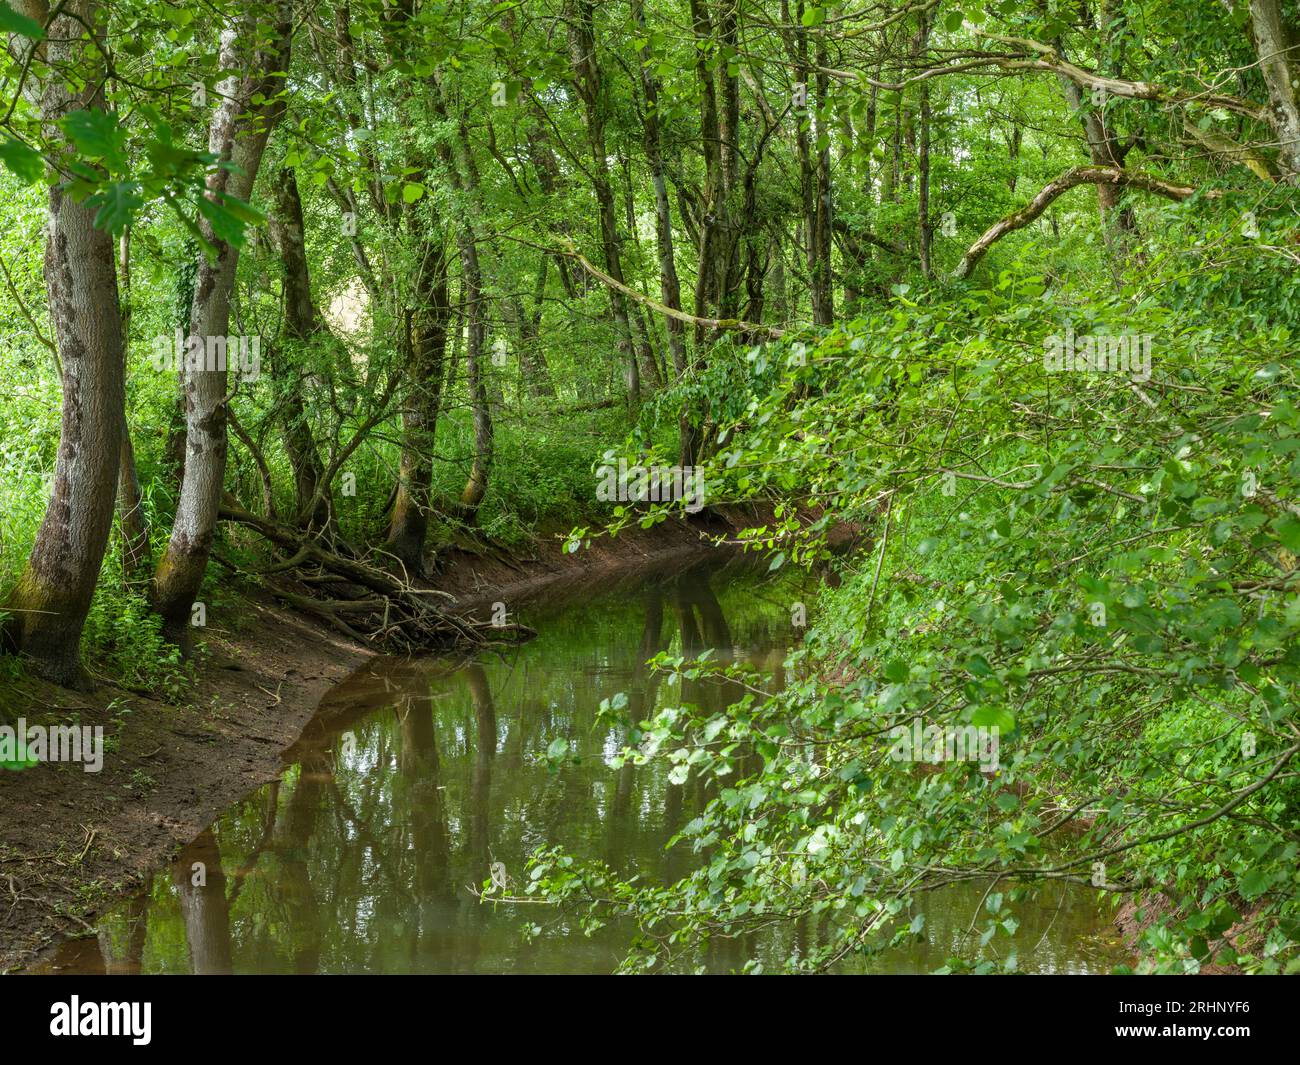 Le Congresbury Yeo, ou rivière Yeo, dans les bois immédiatement avant de se jeter dans le lac Blagdon près d'Ubley, Somerset, Angleterre. Banque D'Images